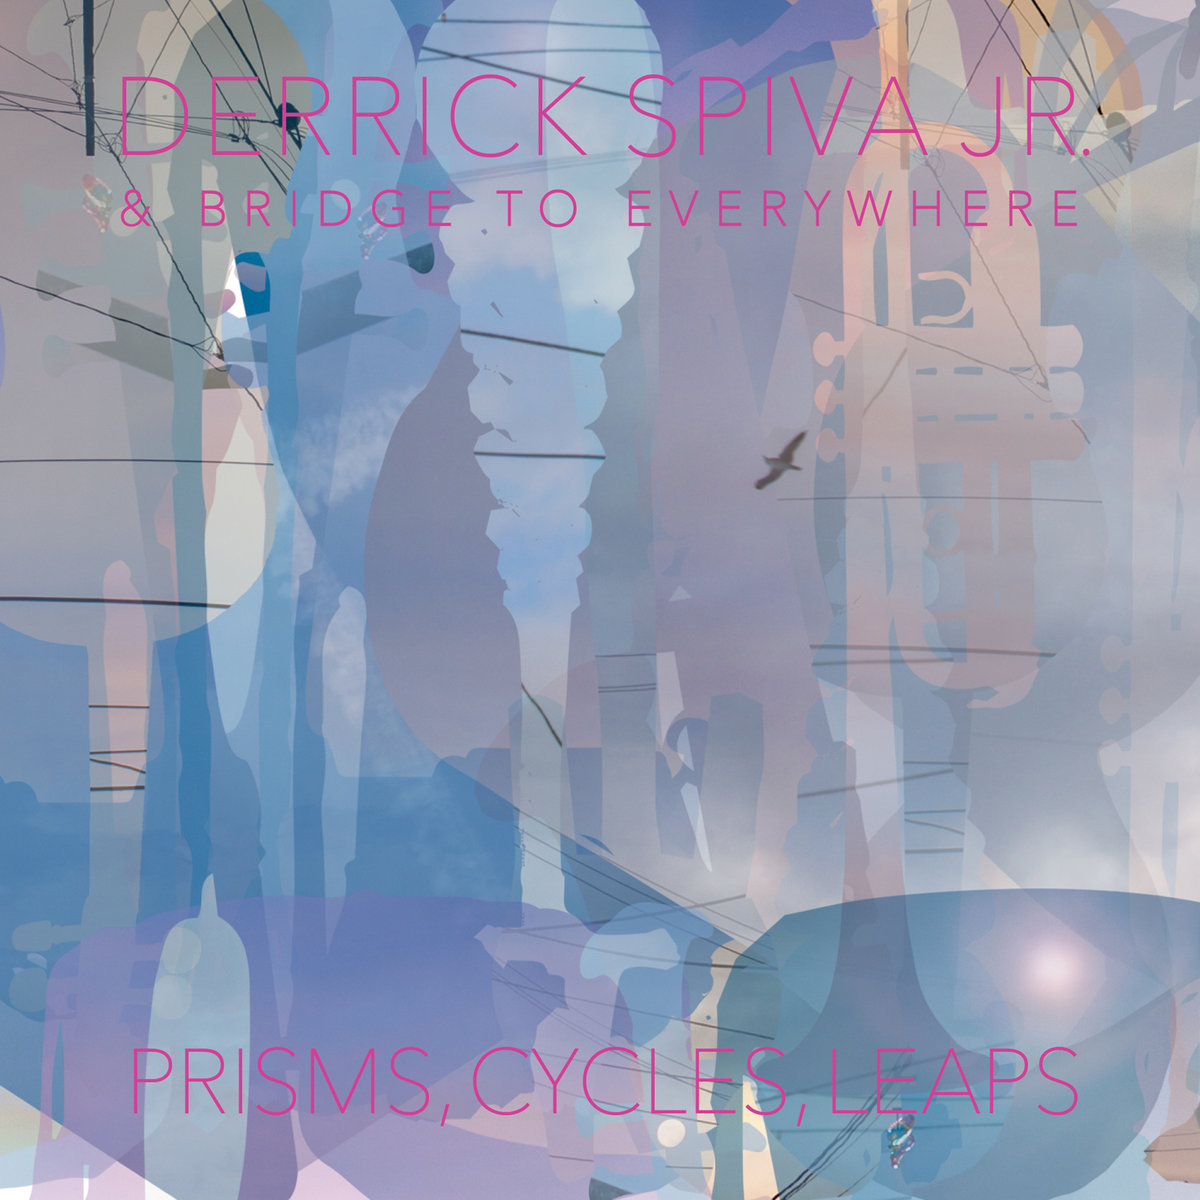 Derrick Spiva Jr. | Prisms, Cycles, Leaps